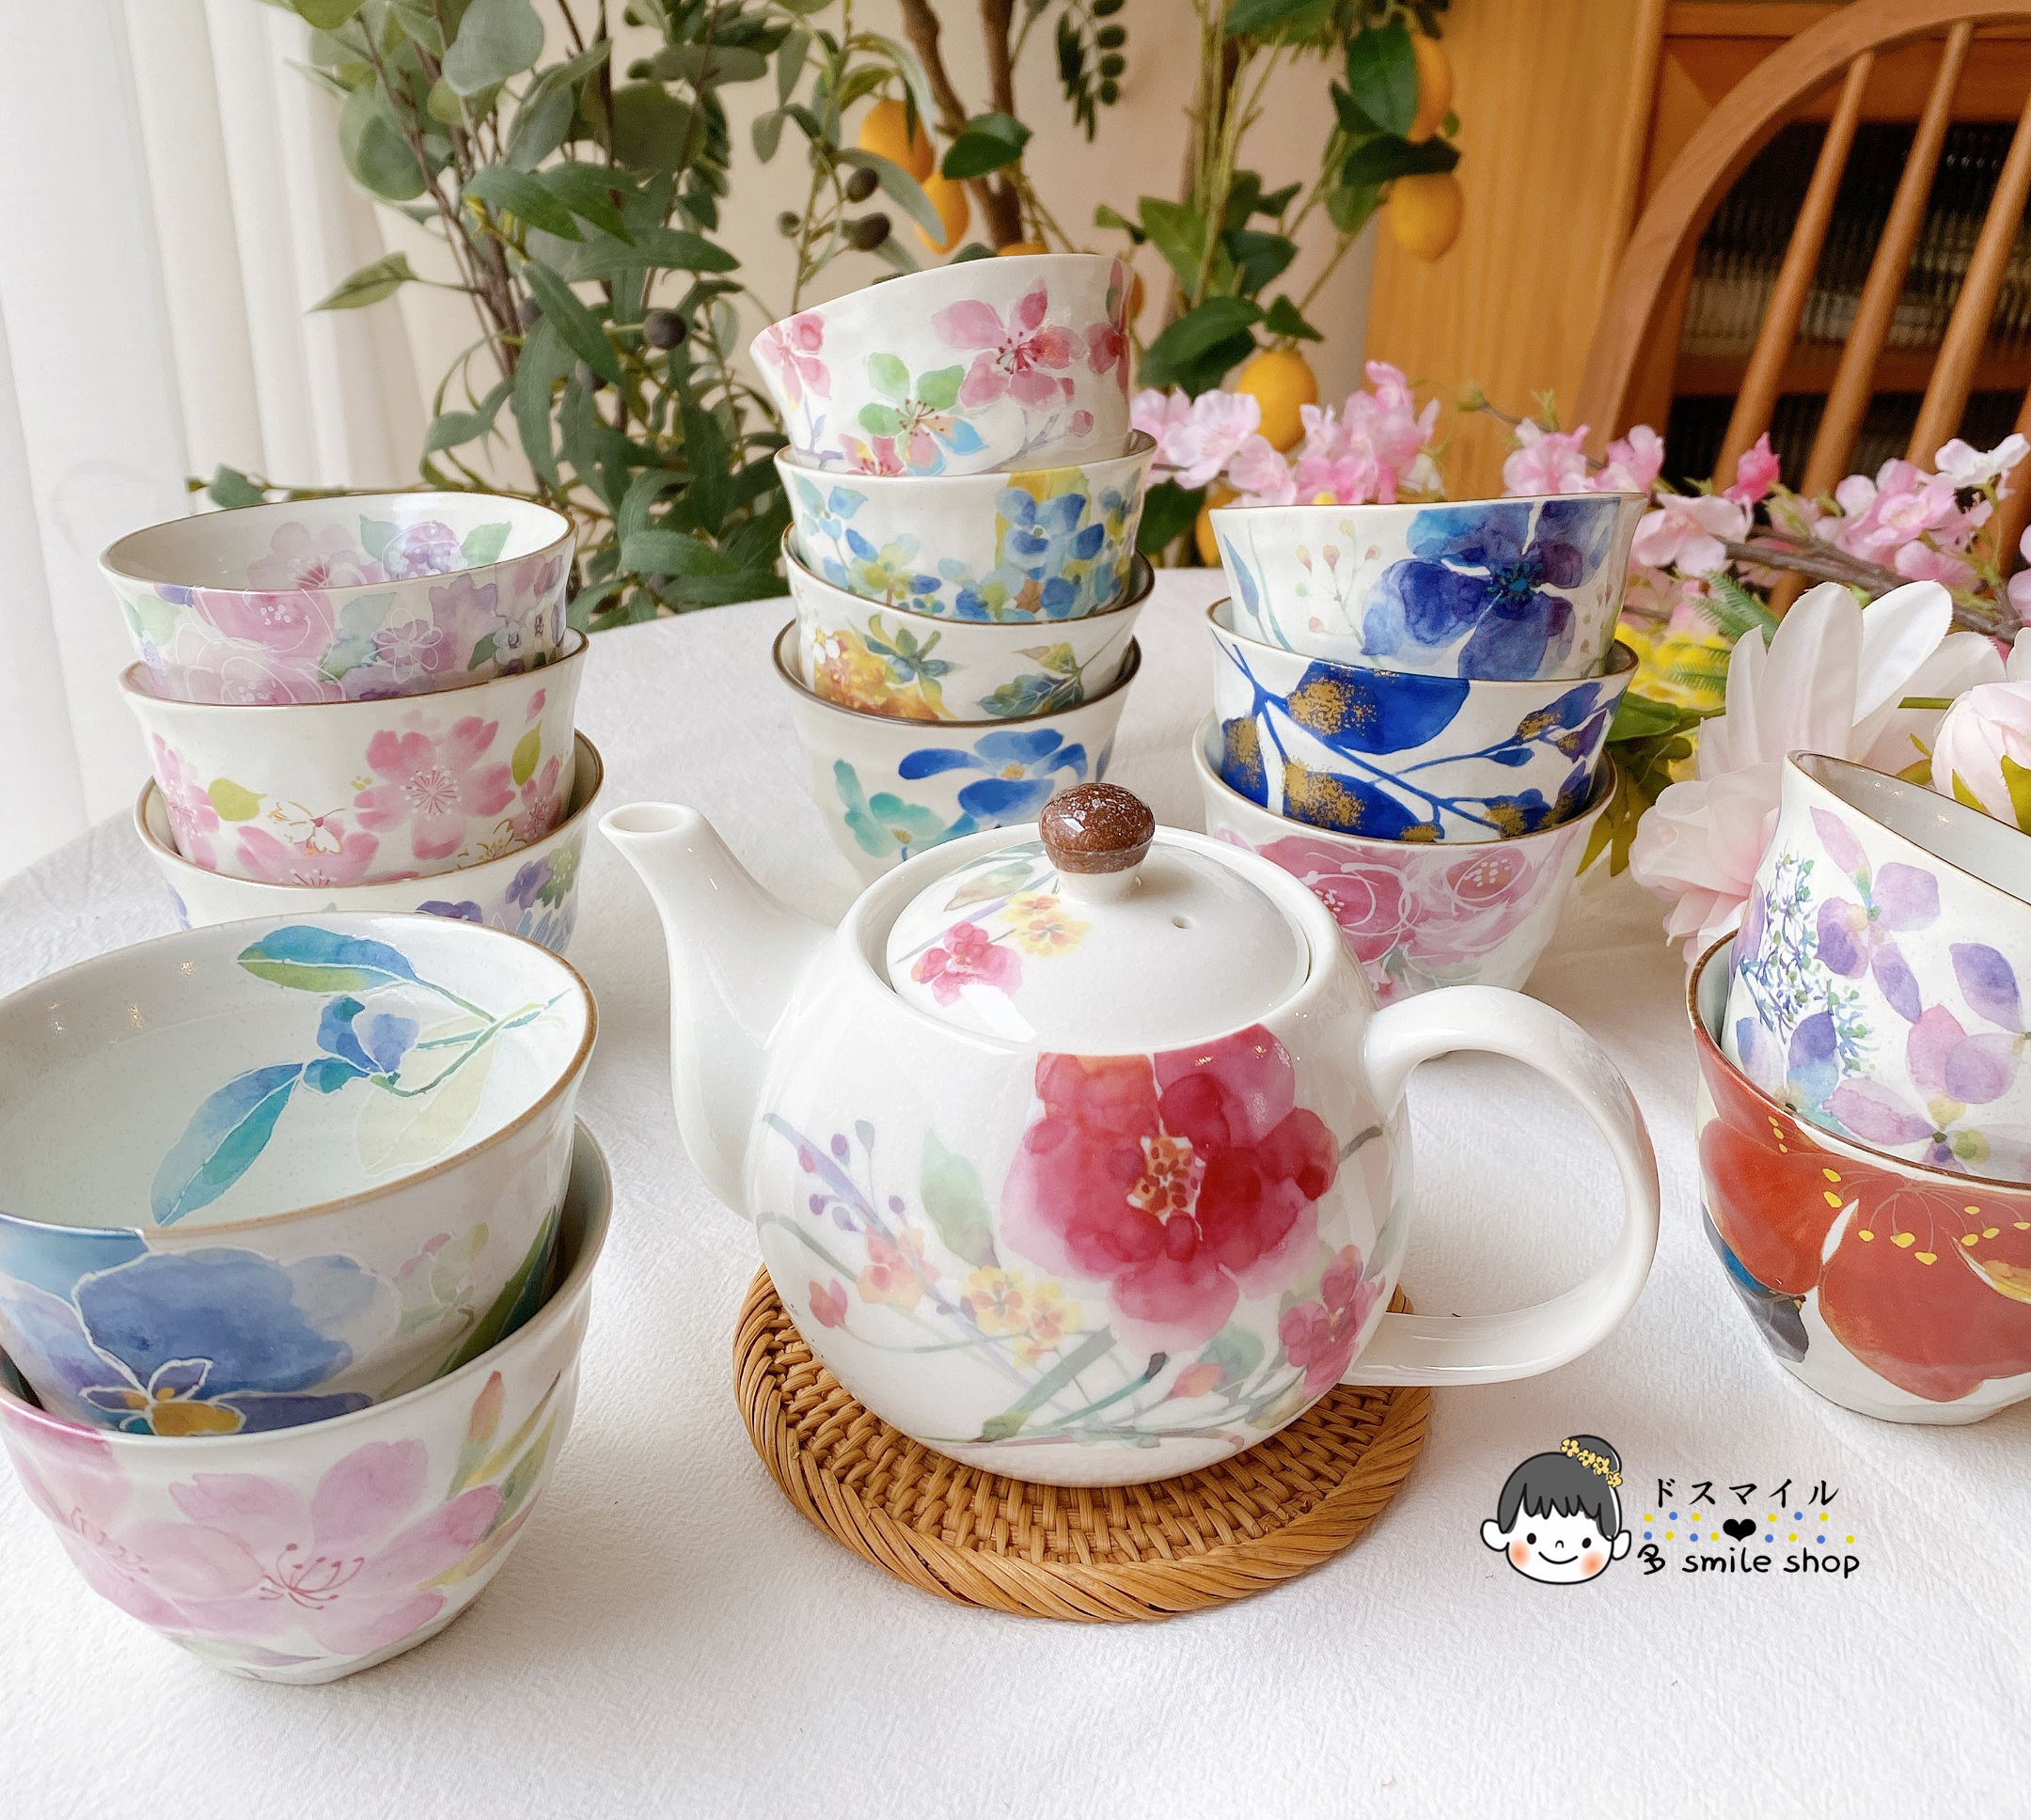 包邮现货日本进口美浓烧和蓝花语繁花樱陶瓷茶壶茶杯汤吞杯子